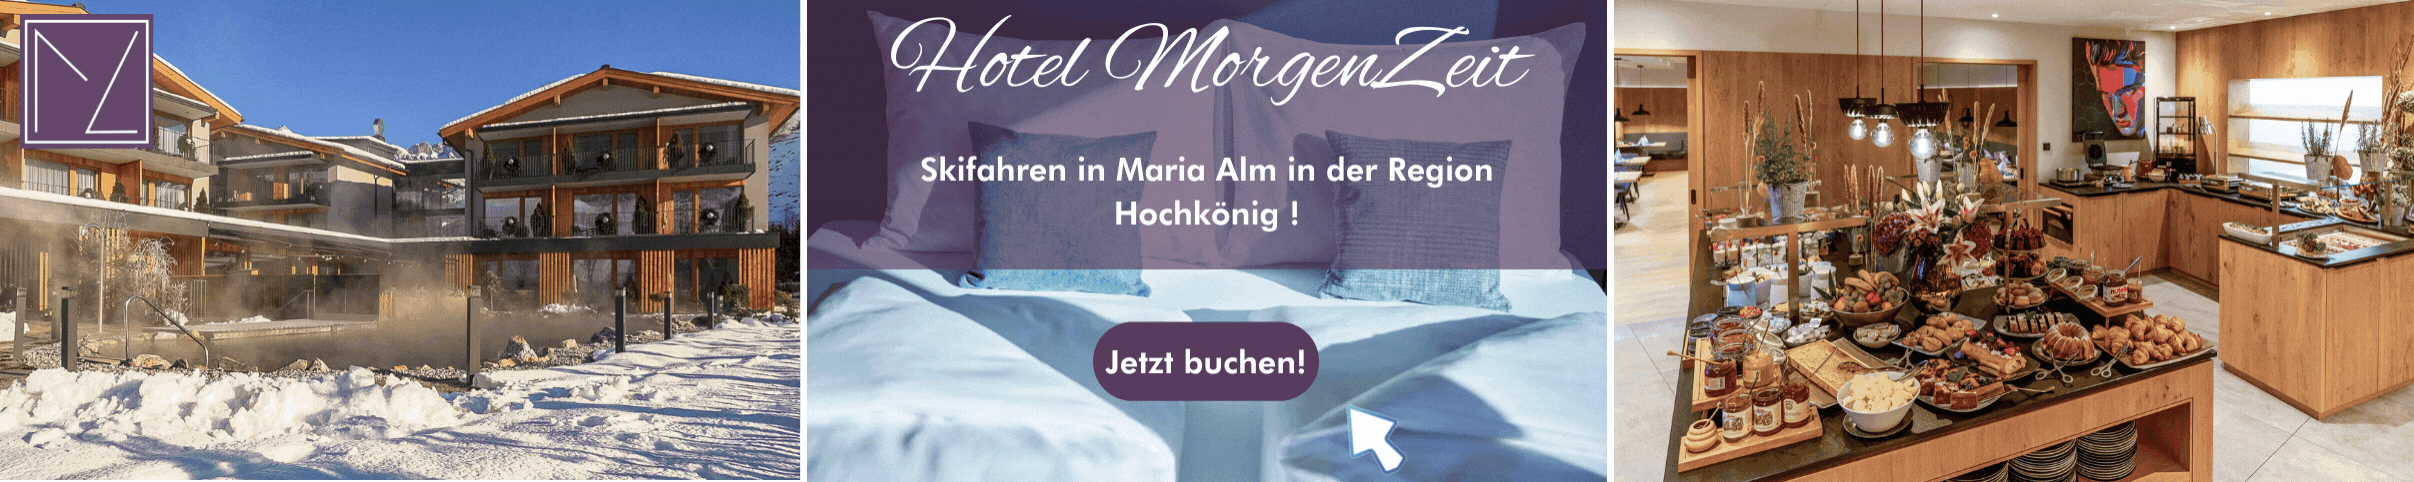 Urlaub im Bed & Brunch Hotel MorgenZeit in Maria Alm